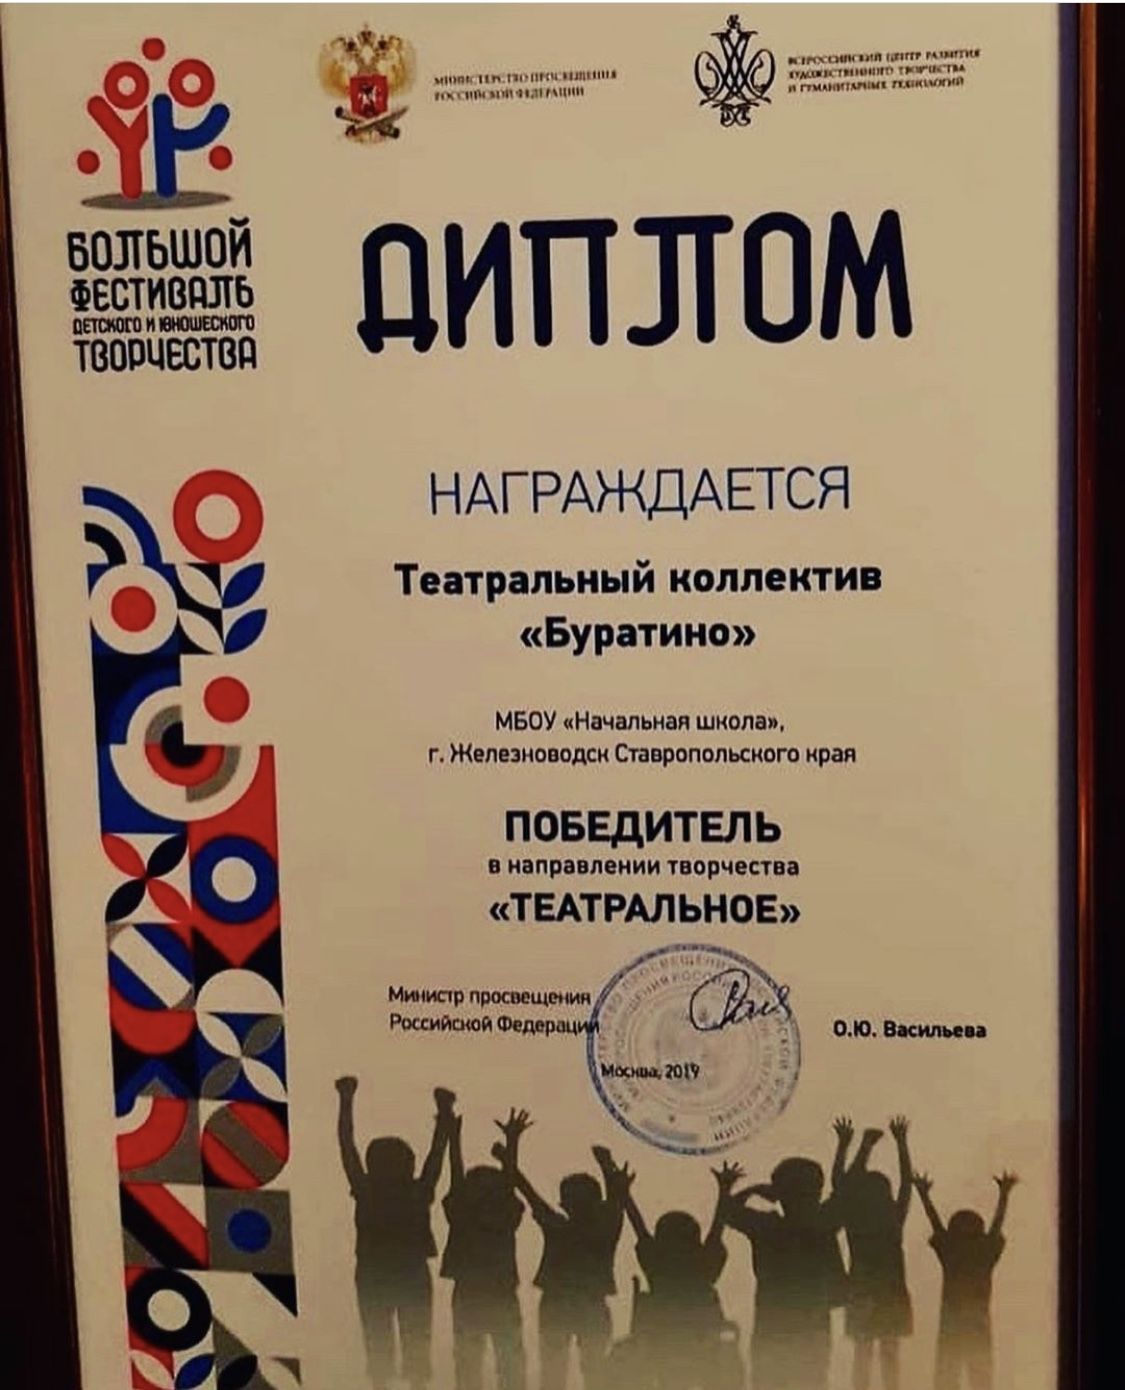 Железноводский театральный коллектив "Буратино" победил на всероссийском конкурсе